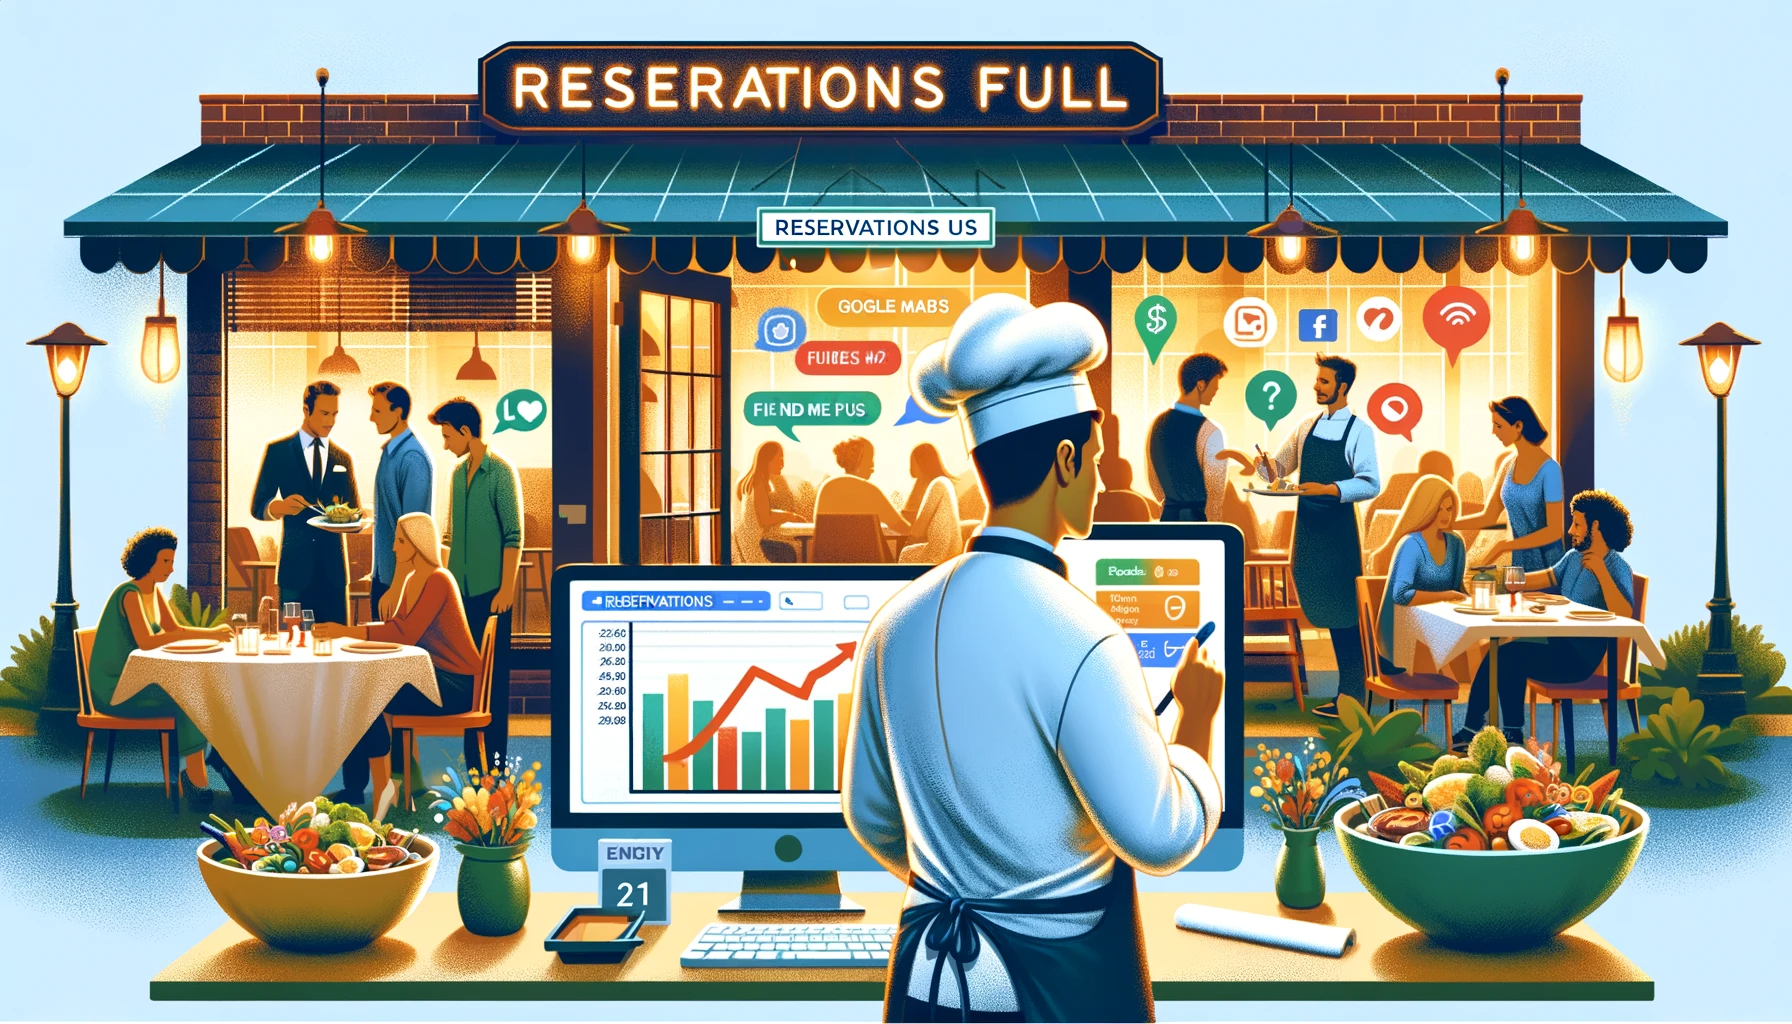 Scène animée d'un restaurant avec un chef examinant un écran d'ordinateur affichant des graphiques de croissance et des icônes de réseaux sociaux, un panneau indiquant que les réservations sont complètes à la réception, et des clients diversifiés qui dînent joyeusement. Légende :